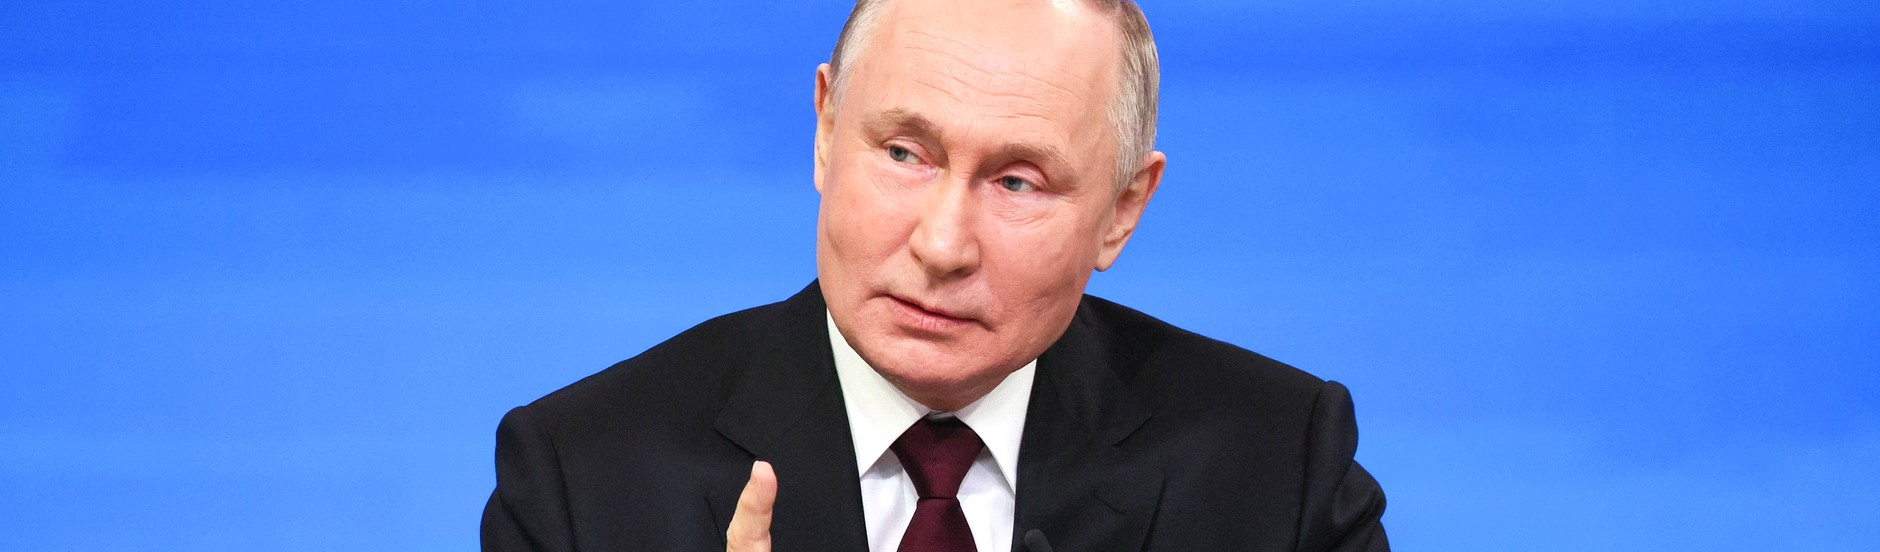 Putin: Dolarização de Milei é perda de soberania e séria ameaça socioeconômica